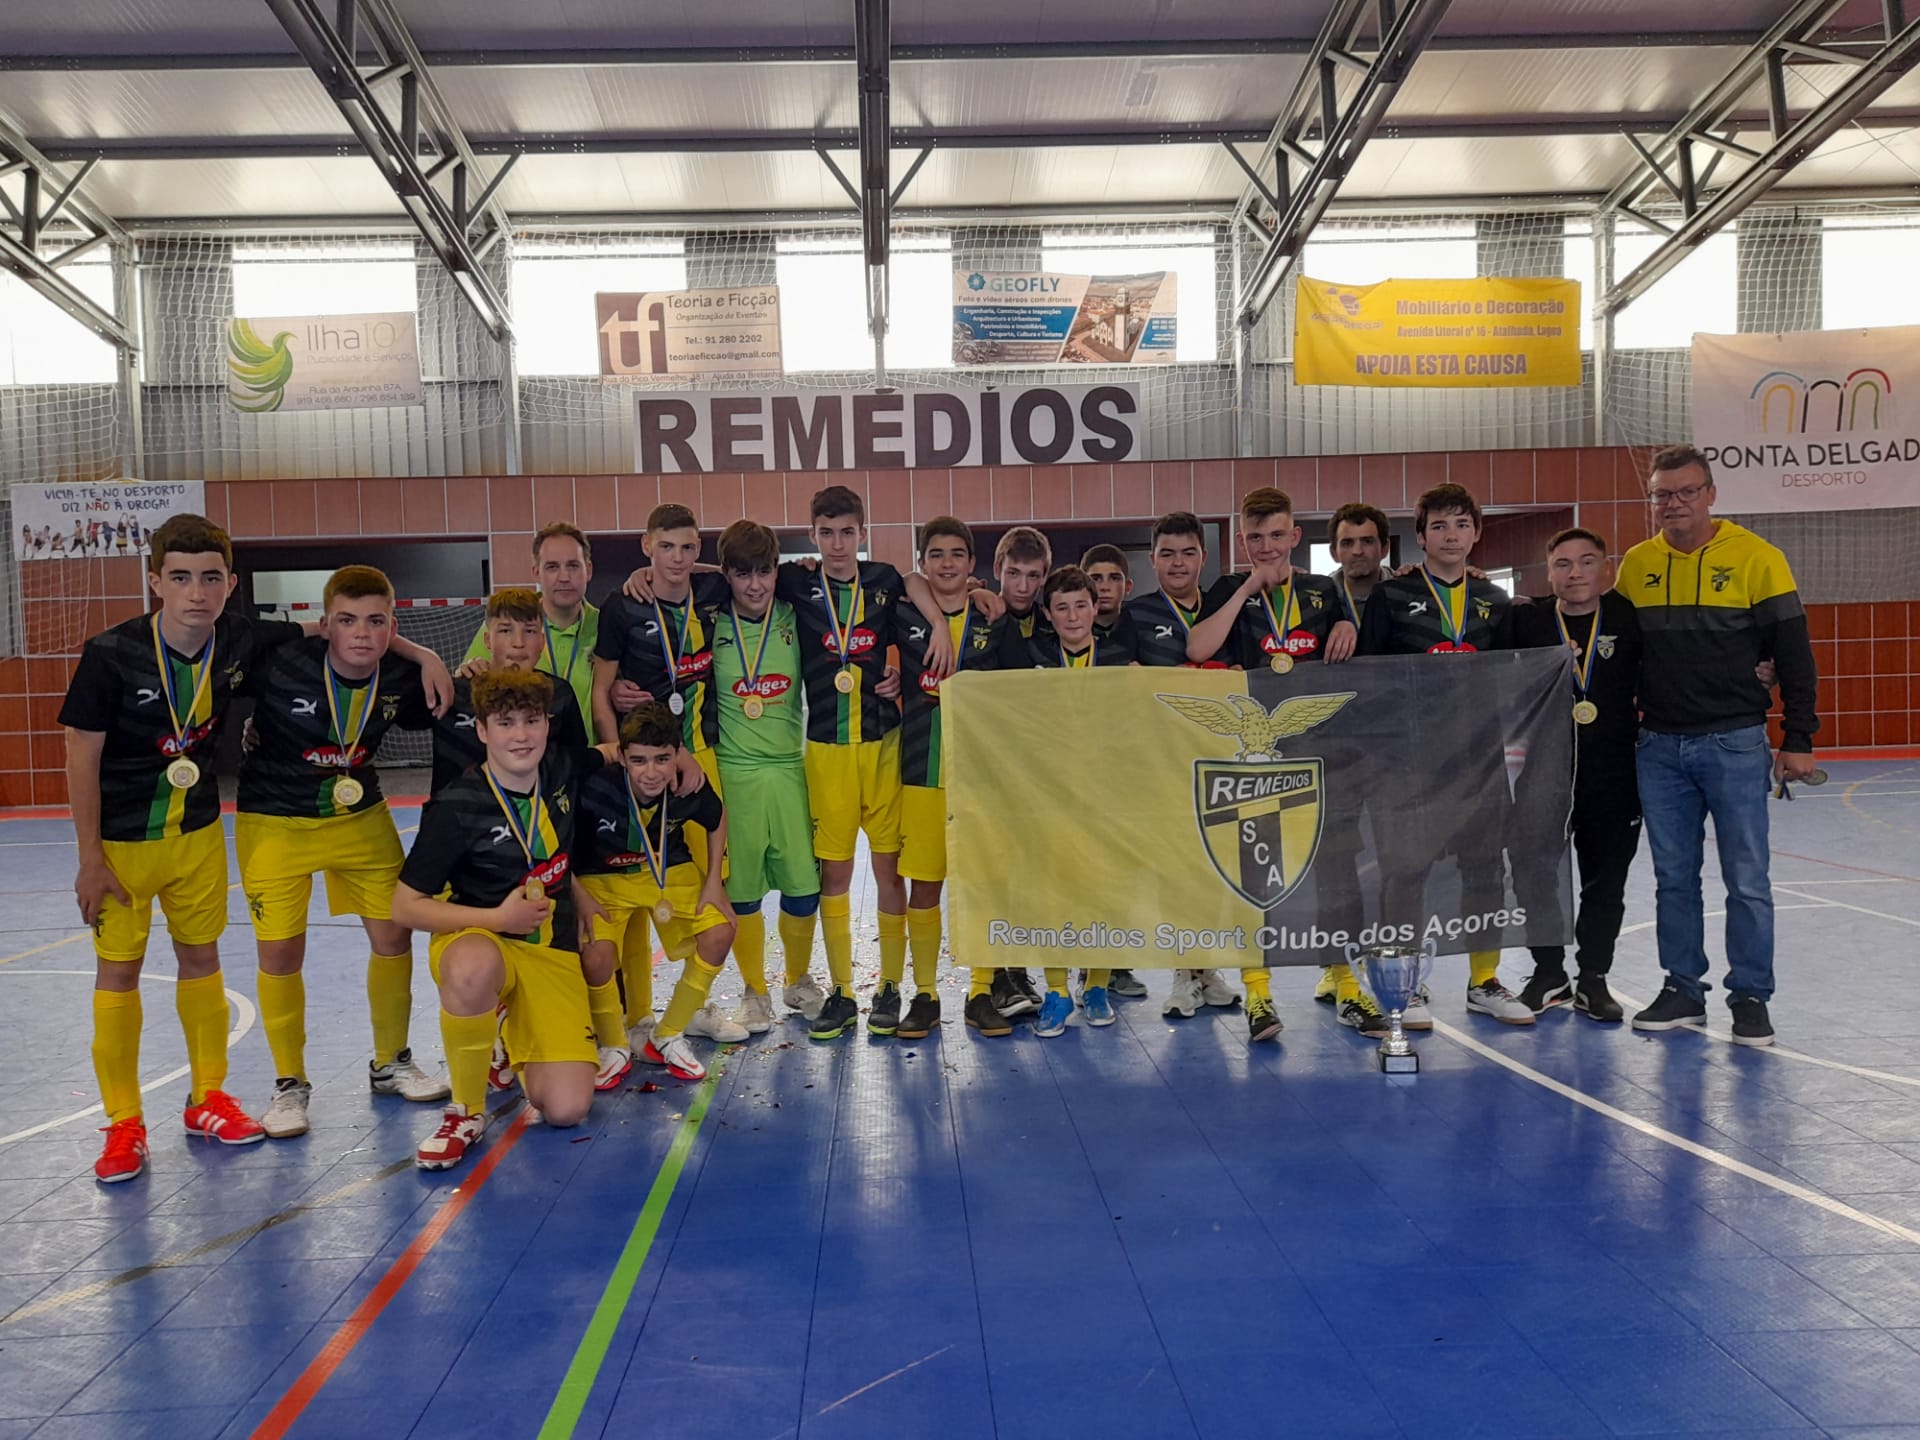 Remédios Sport Clube dos Açores sagraram-se campeões de São Miguel